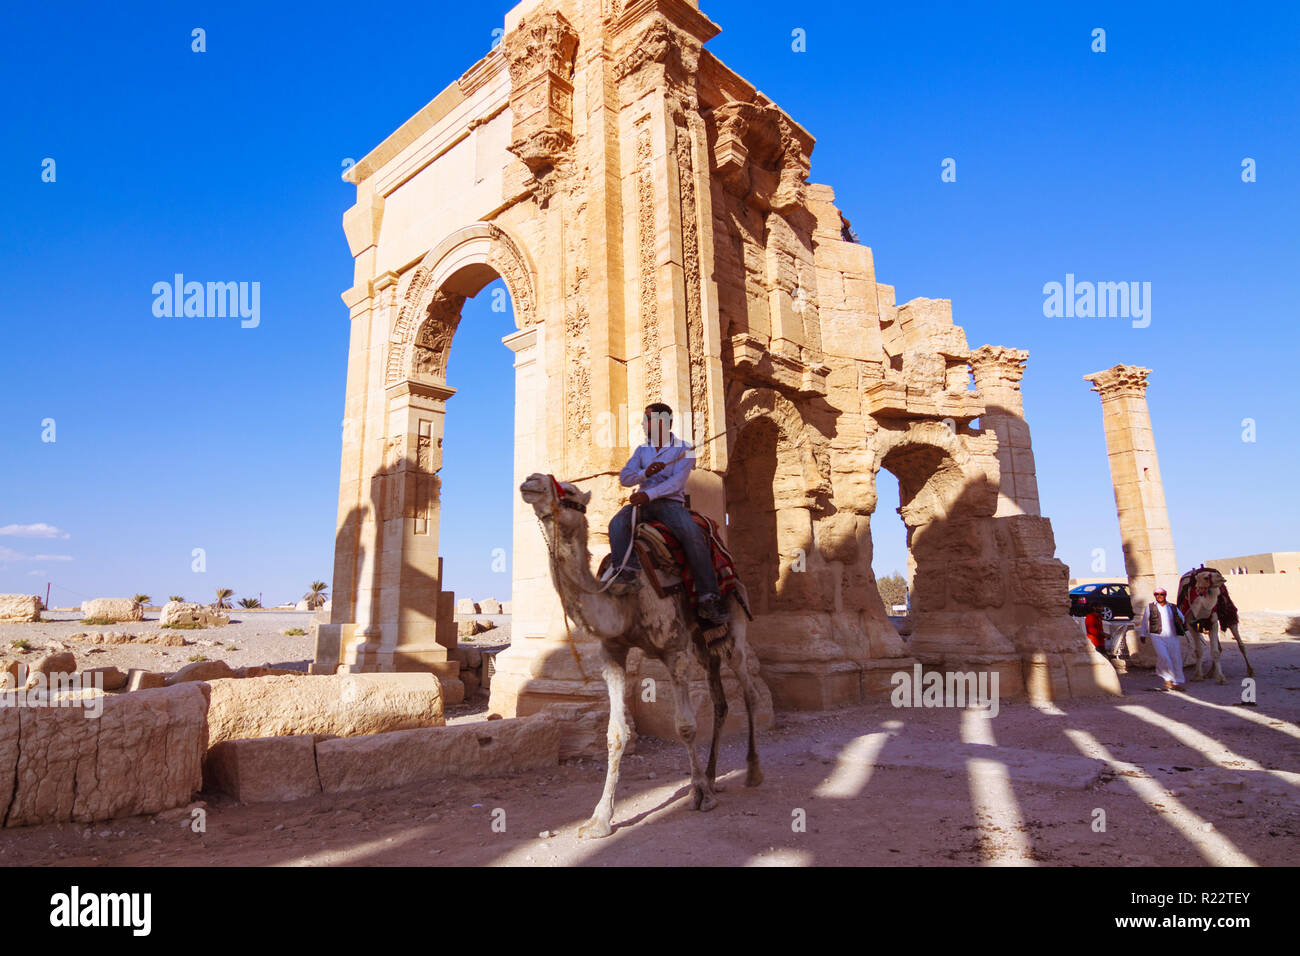 Palmyra, Homs Governatorato, Siria - Maggio 27th, 2009 : un uomo che cavalca un cammello al di sotto del terzo secolo monumentale arco di trionfo di Palmyra, Romano ornamenta Foto Stock